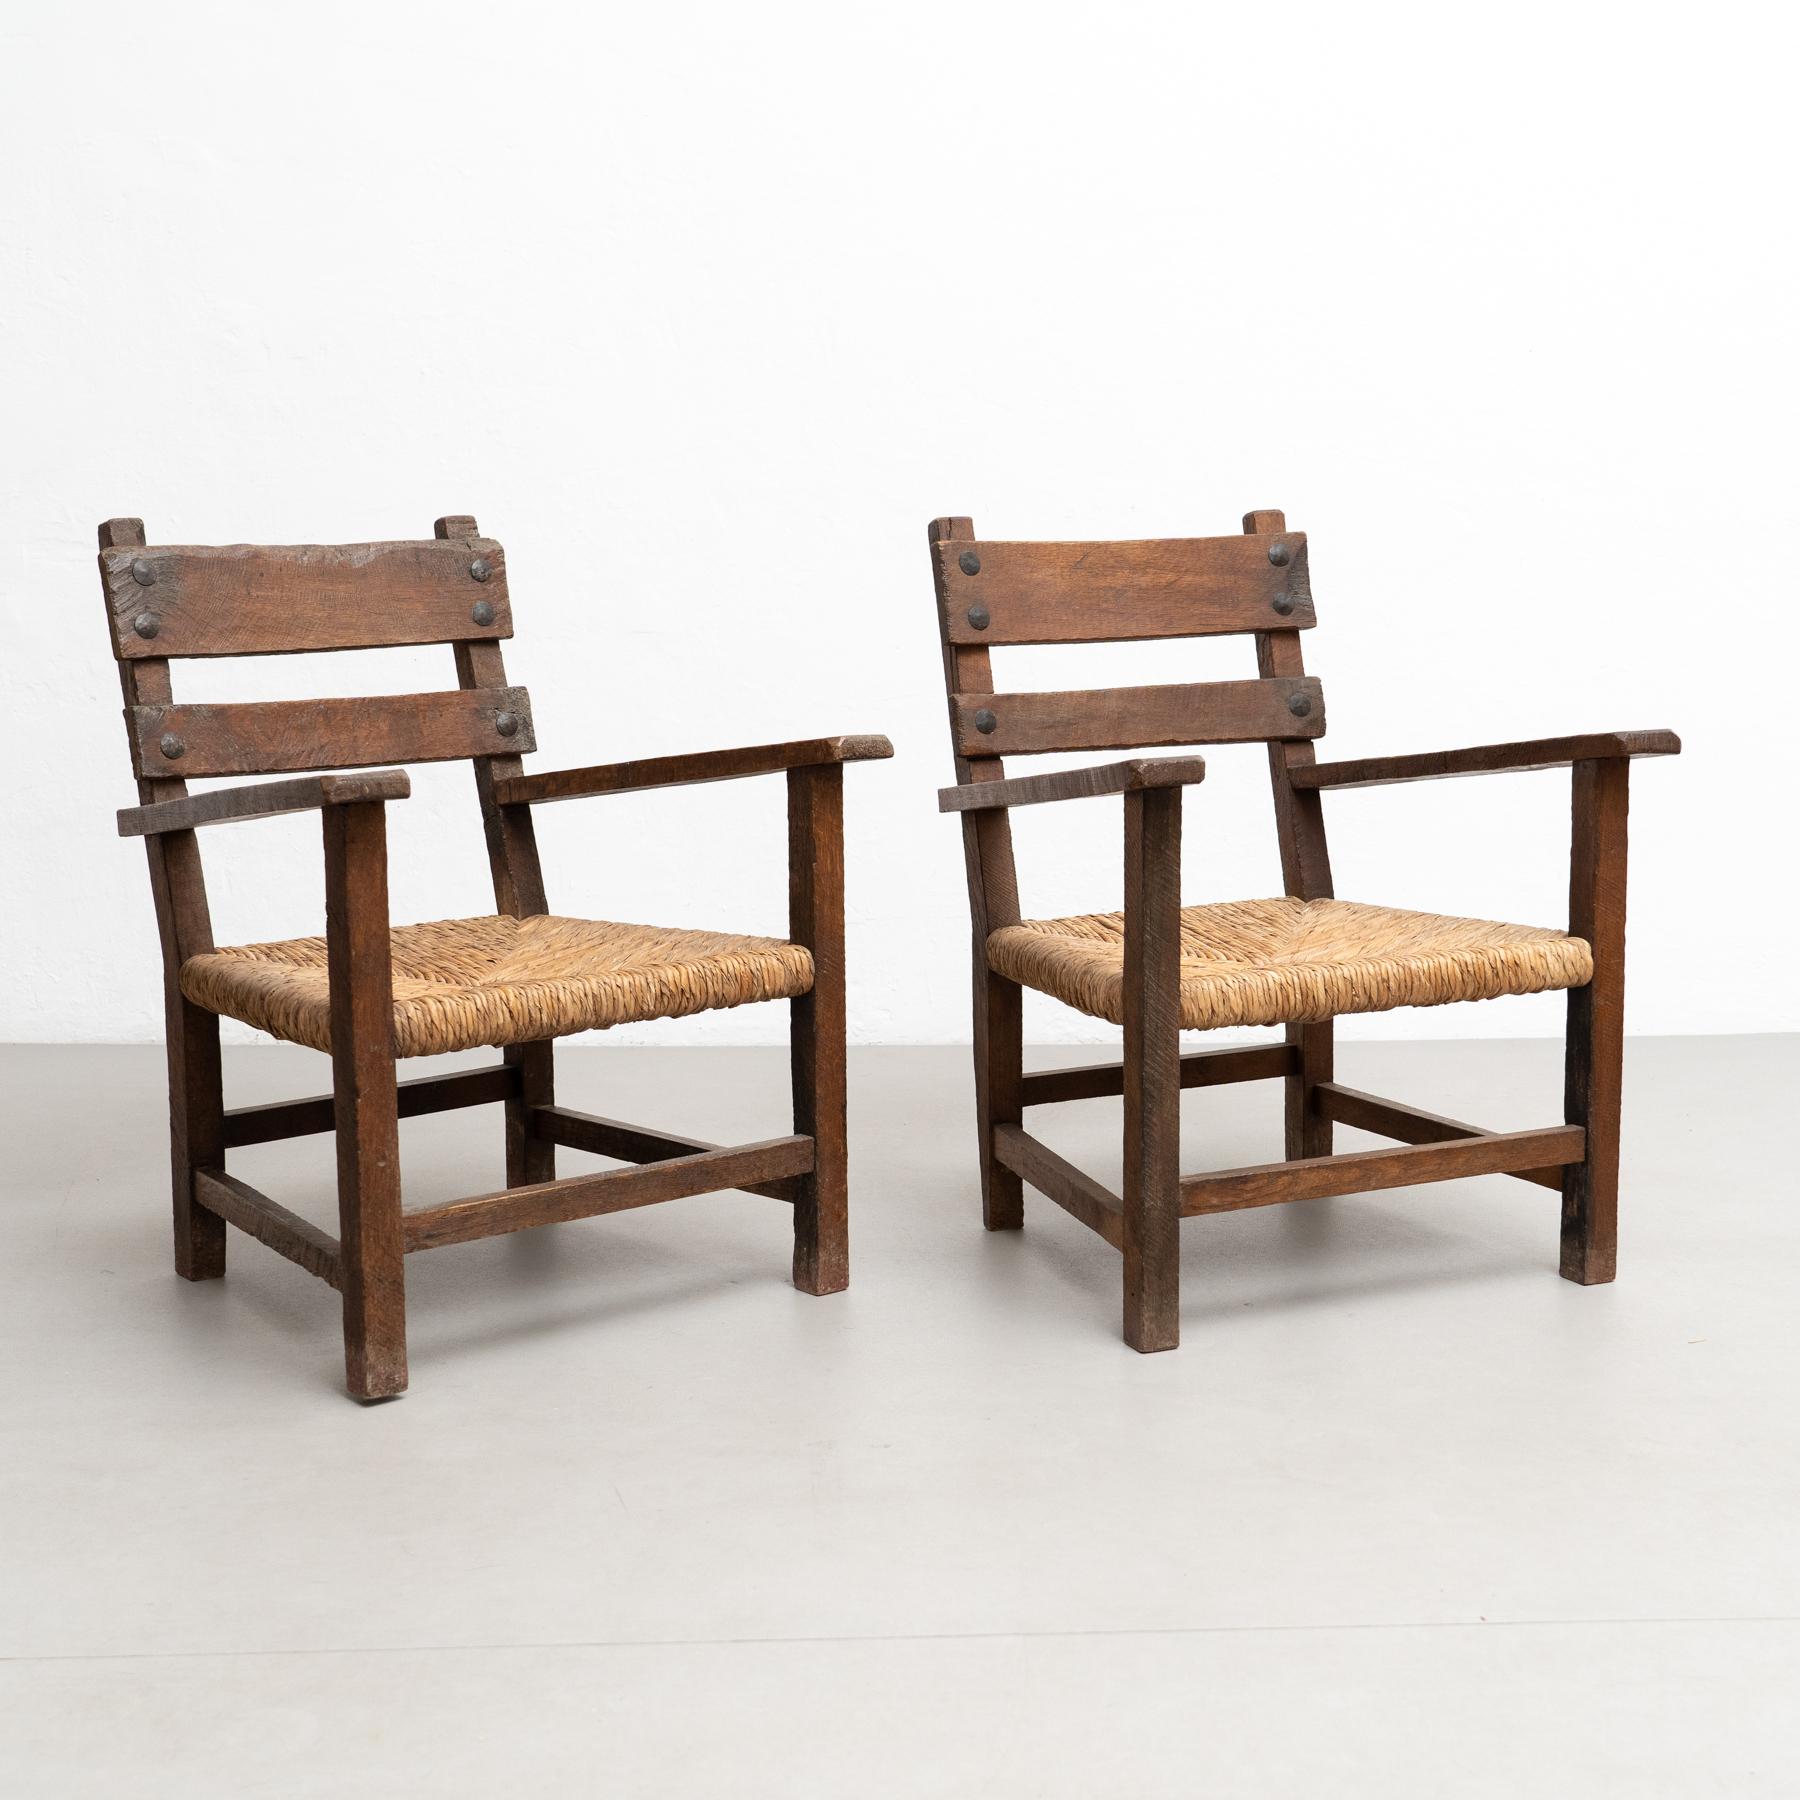 Verschönern Sie Ihren Wohnraum mit diesem charmanten Set aus zwei rustikalen Sesseln, die an das frühe 20. Jahrhundert erinnern. Die mit großer Sorgfalt gefertigten Sessel zeichnen sich durch ein zeitloses Design aus, bei dem Massivholz und Rattan